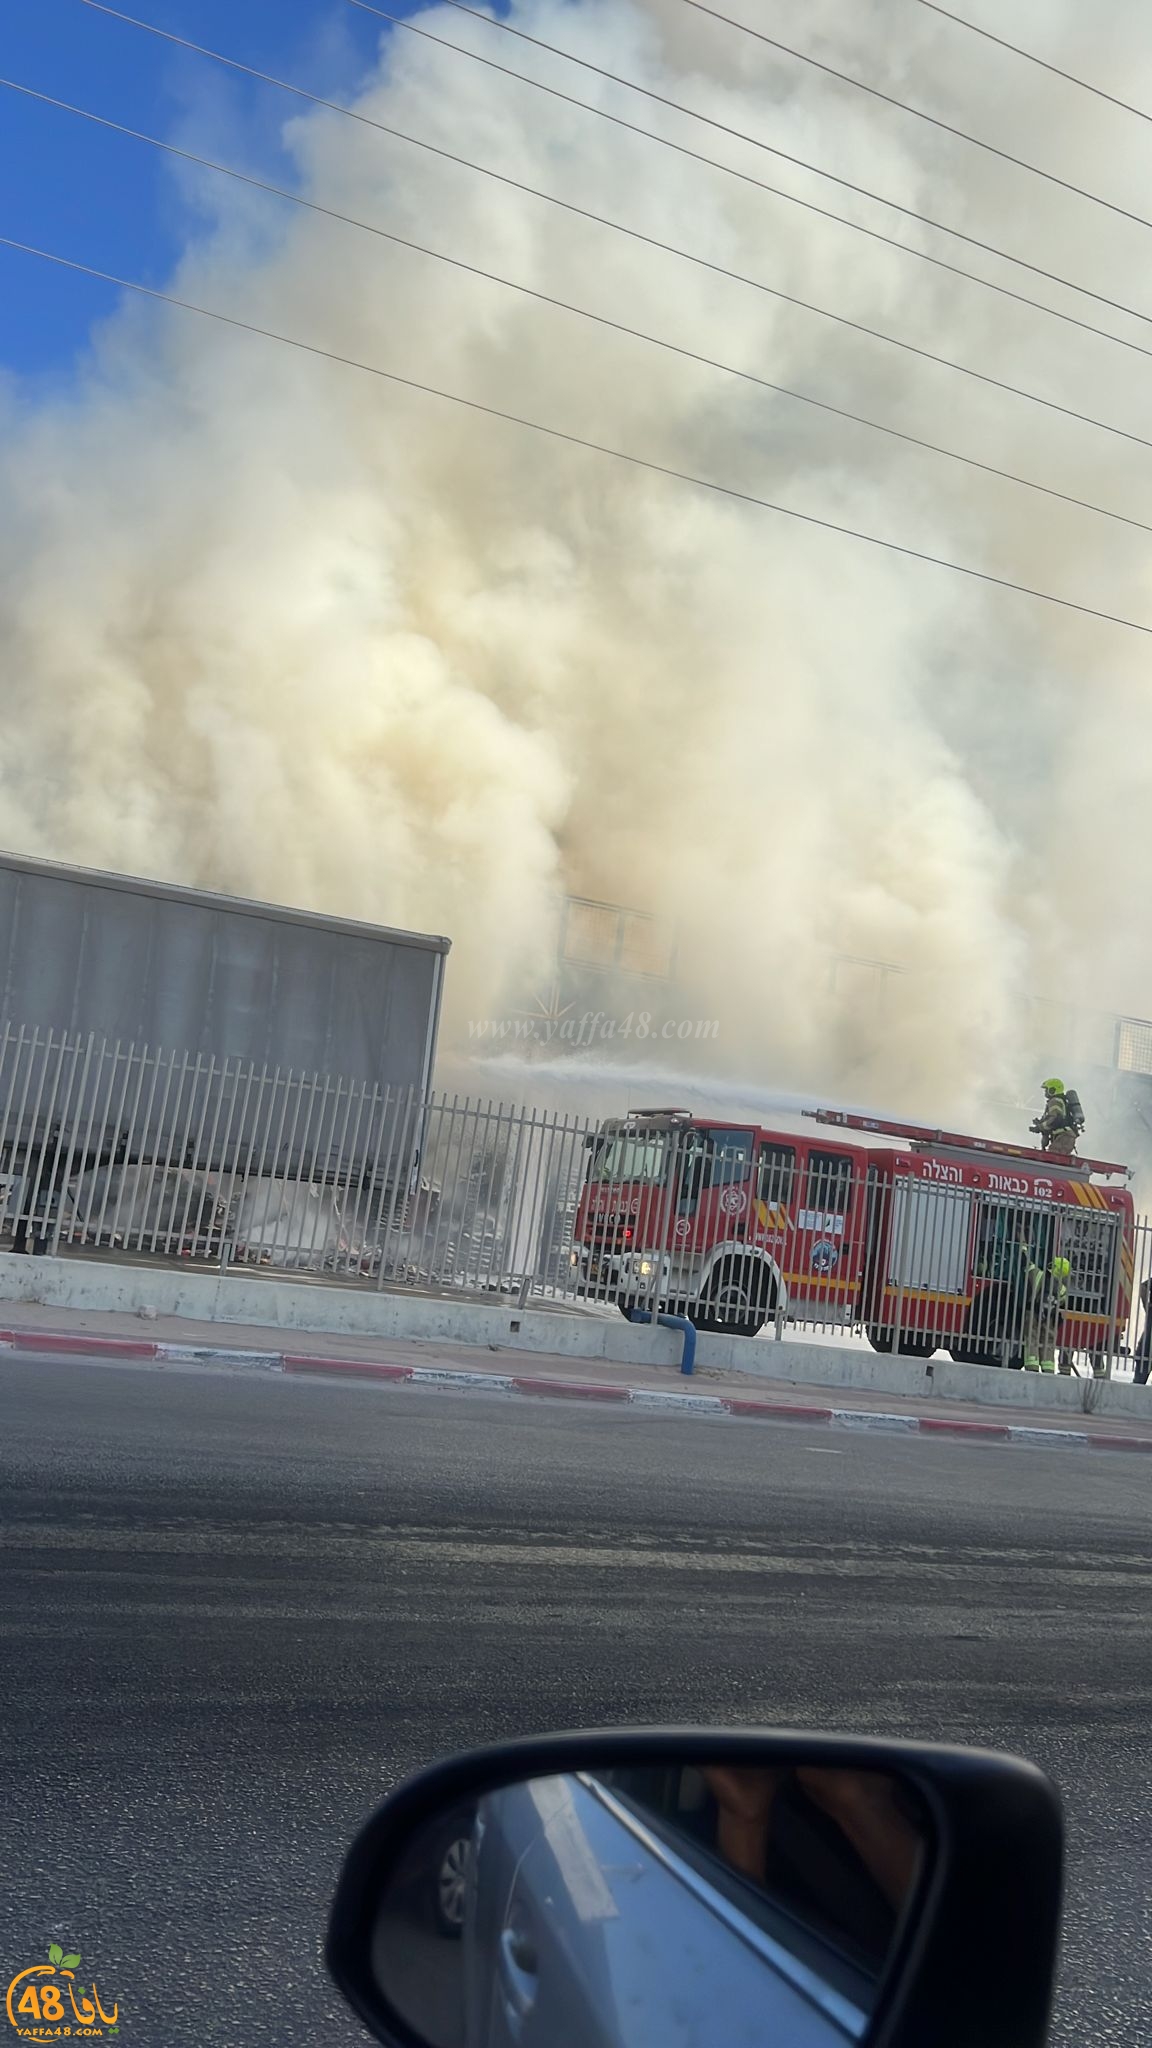 اللد: طواقم الإطفائية تعمل على إخماد حريق وسط المدينة